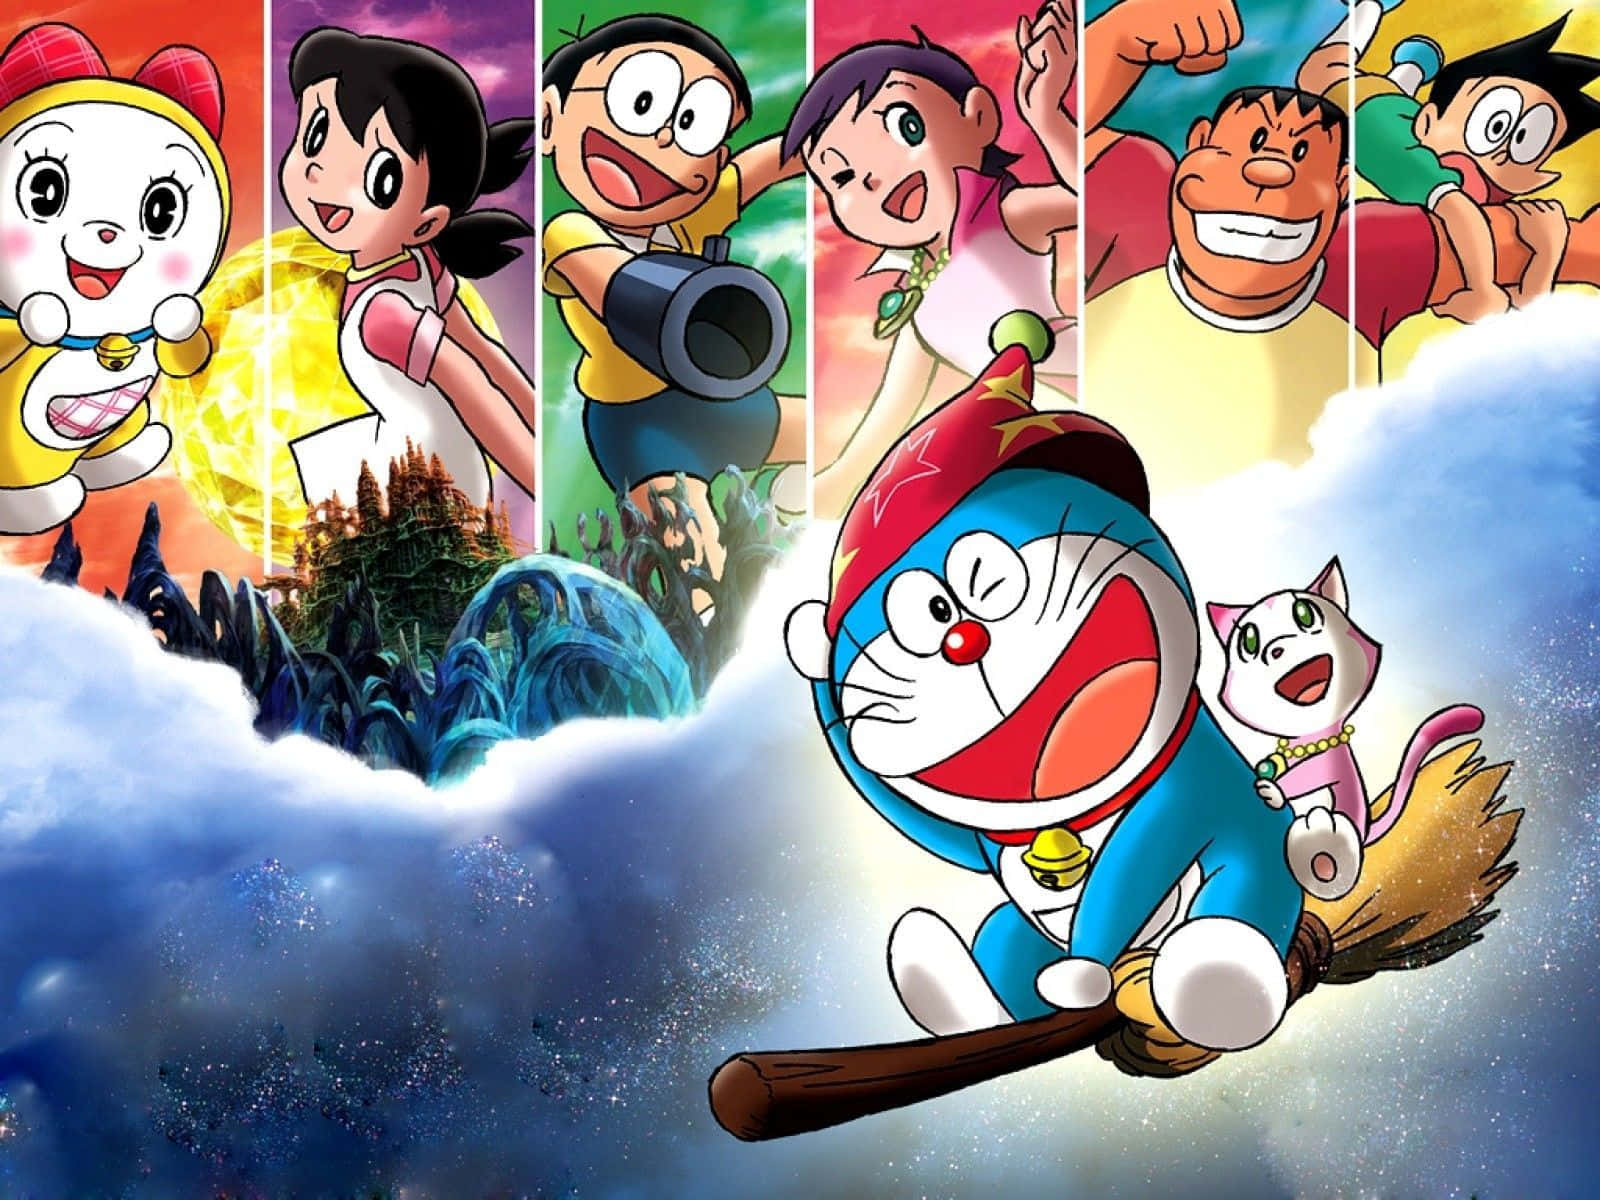 Doraemonbaut Mit Seinen Freunden Eine Festung.